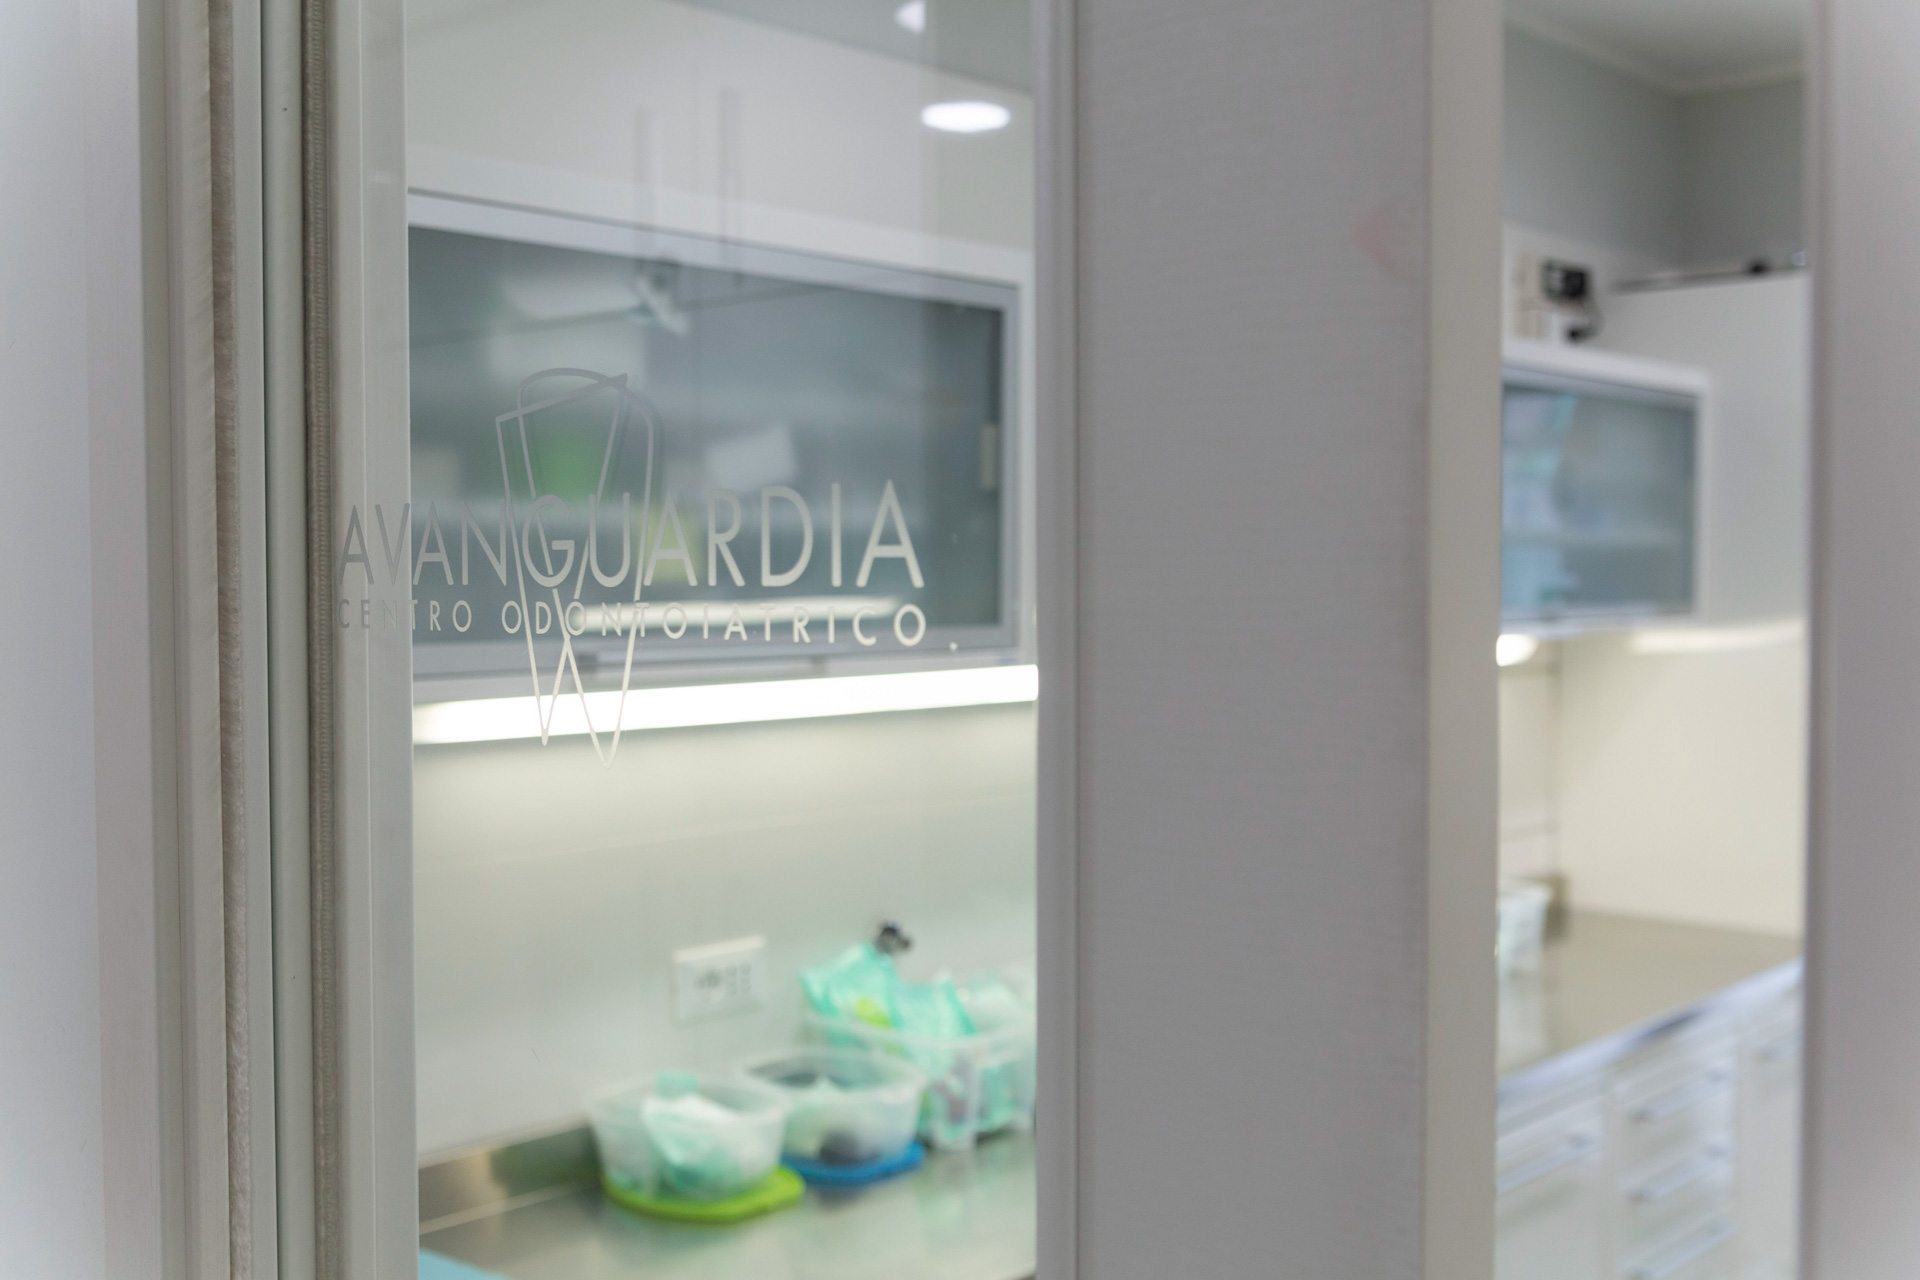 Centro Odontoiatrico Avanguardia - Odontoiatria di qualità in Abruzzo | Garanzia di sterilizzazione